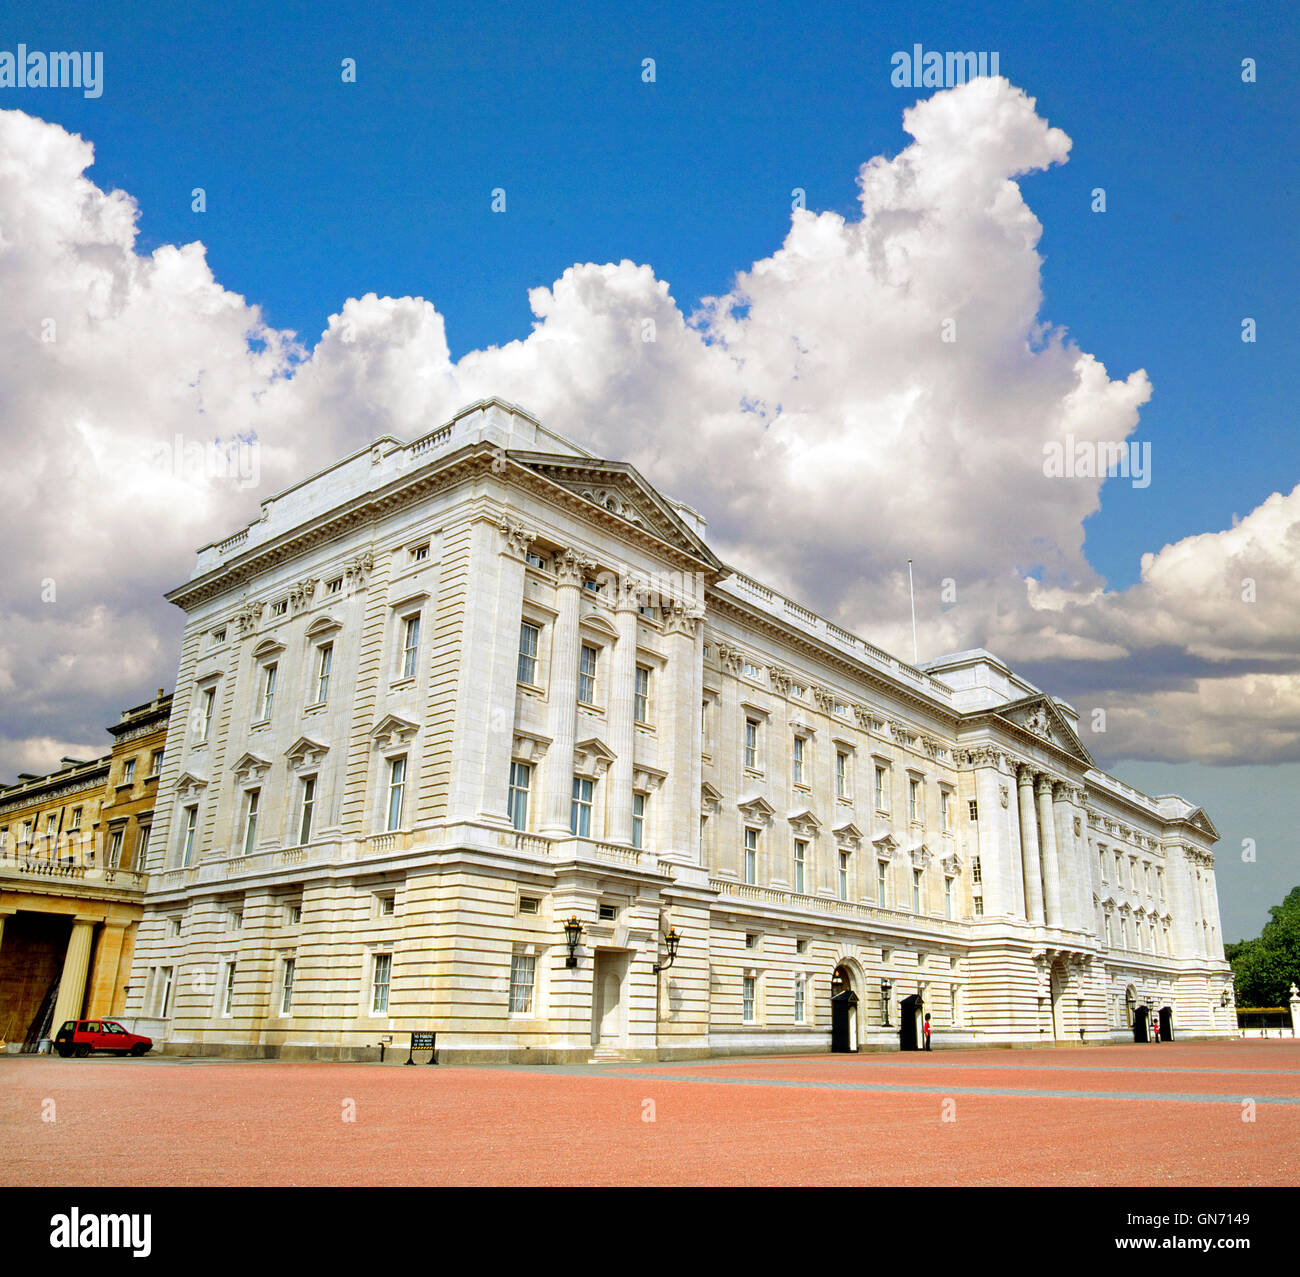 Una vista frontale di Buckingham Palace, la residenza della Famiglia Reale e la regina d'Inghilterra, la Regina Elisabetta II, a Londra, in Inghilterra. Foto Stock